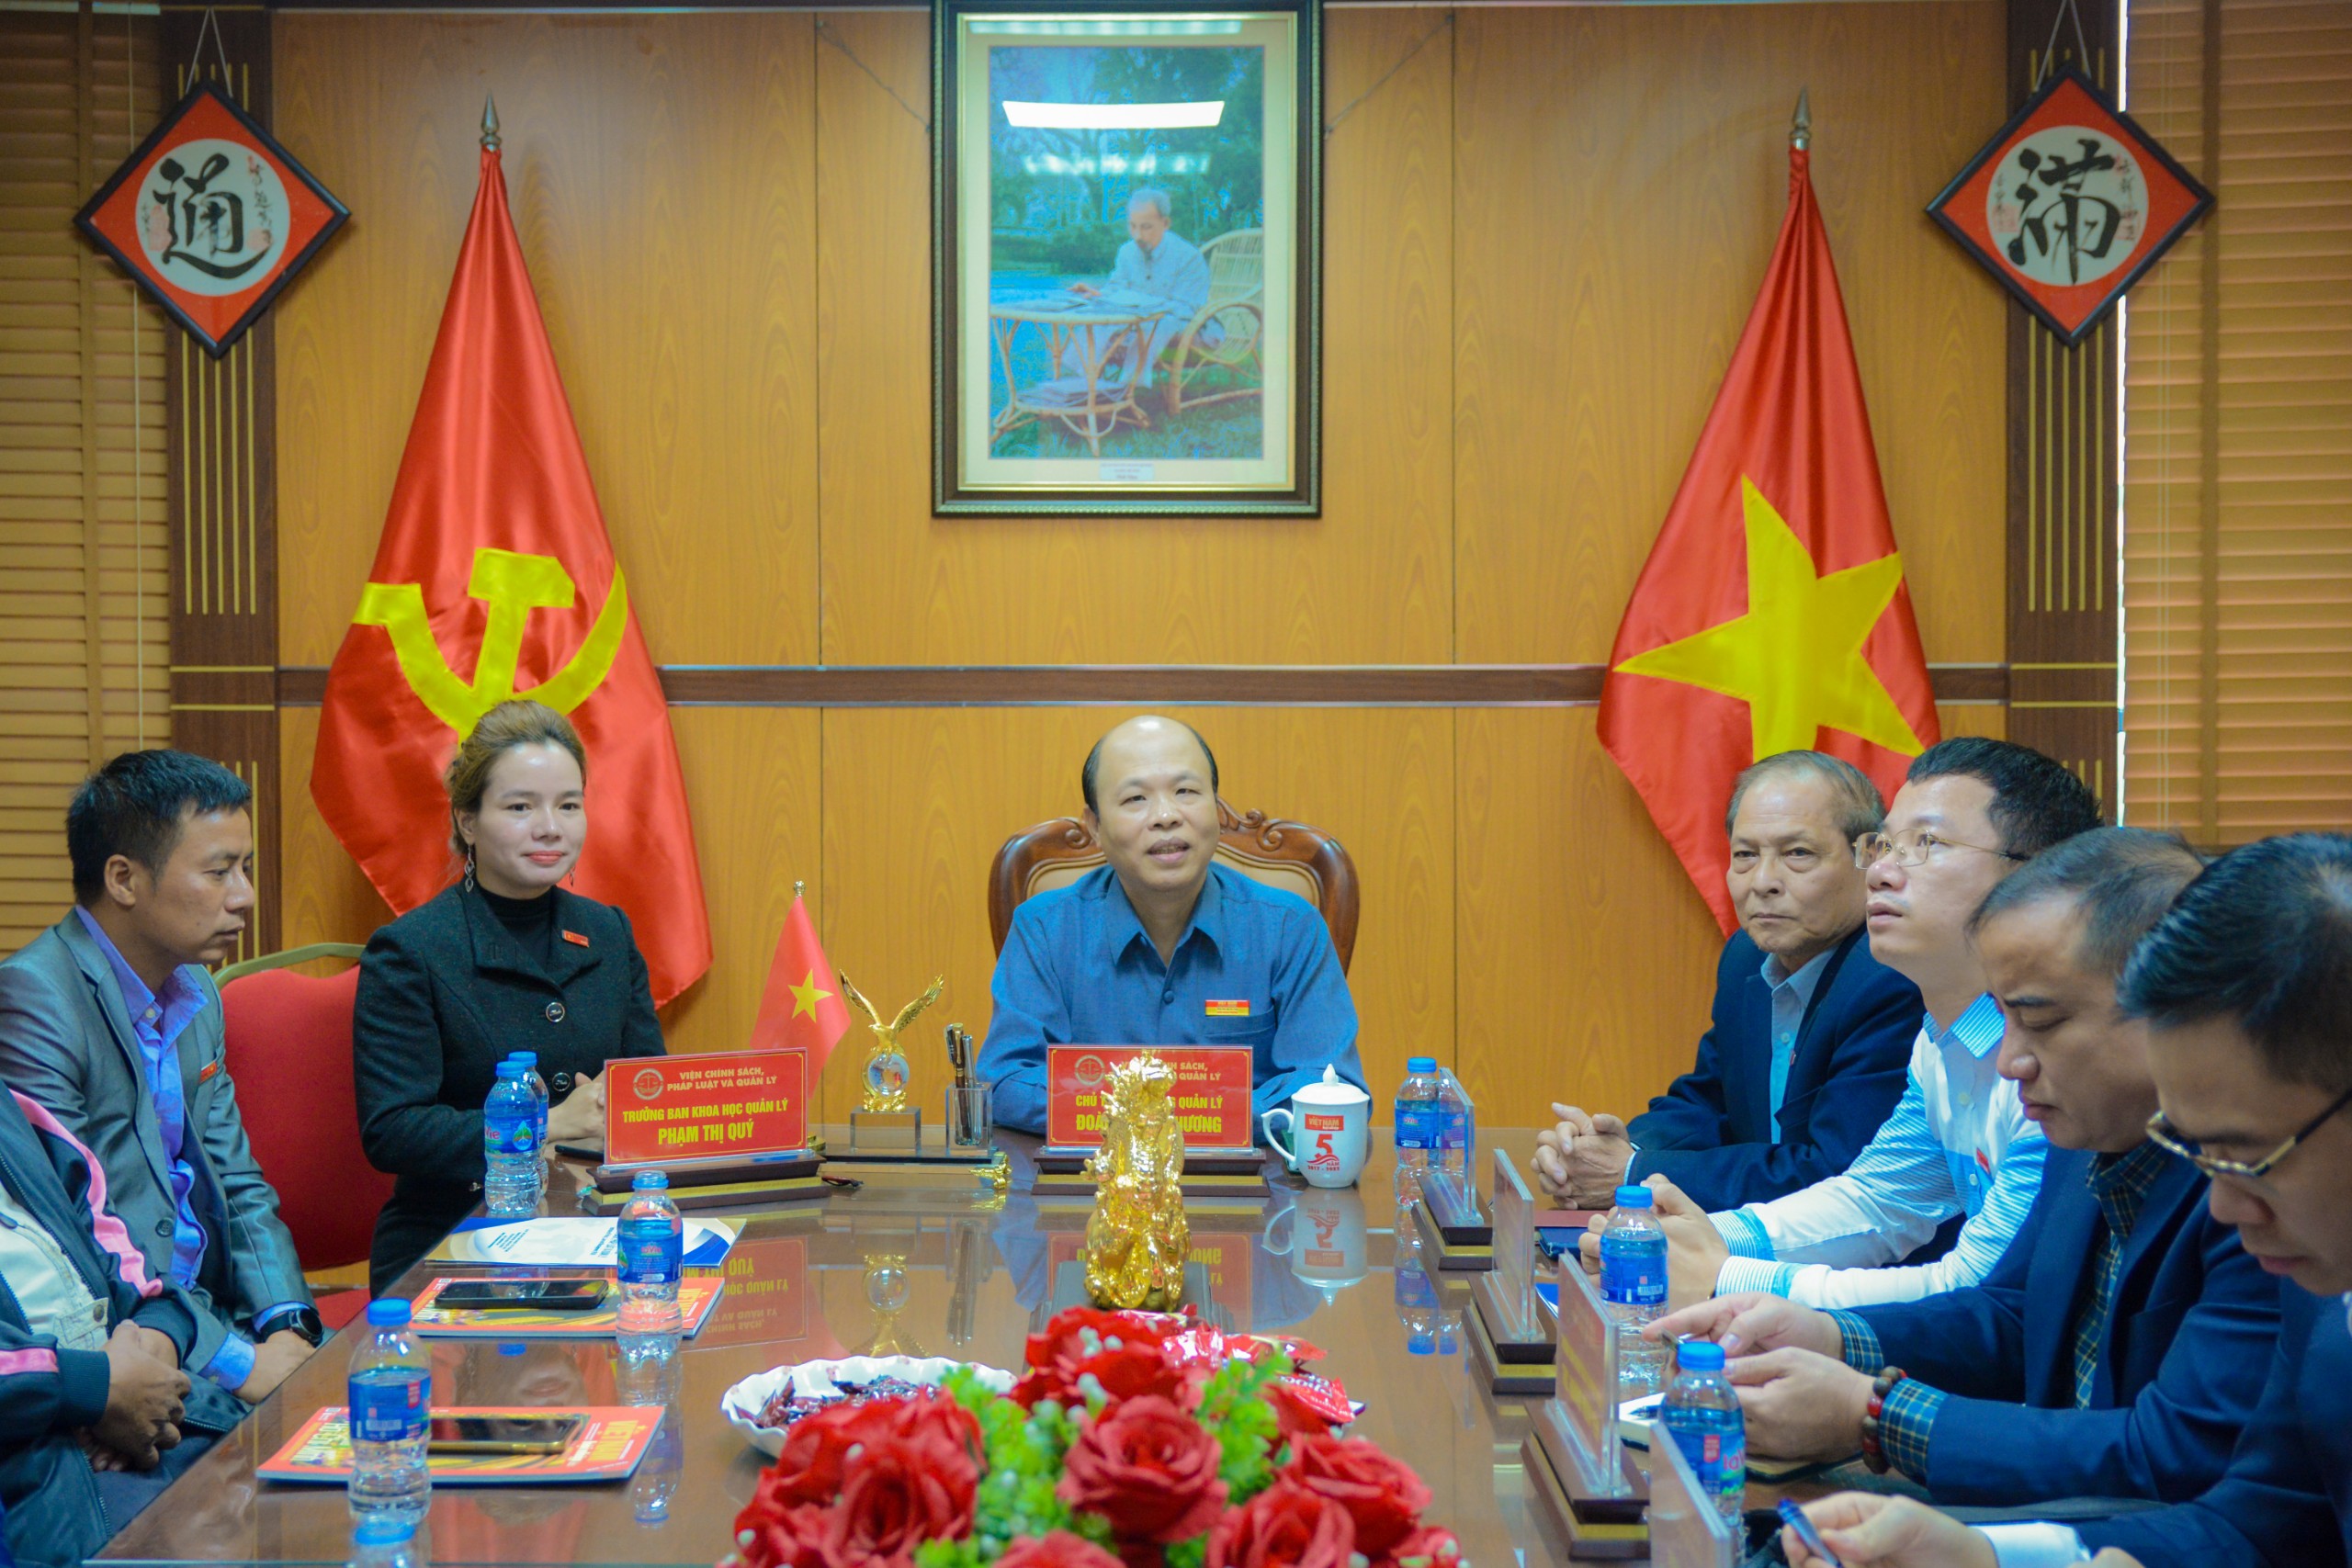 Bà Phạm Thị Quý - Chủ tịch Học viện Tâm Trí nhận Quyết định bổ nhiệm Trưởng Ban Khoa học Quản lý thuộc Viện Chính sách, Pháp luật và Quản lý